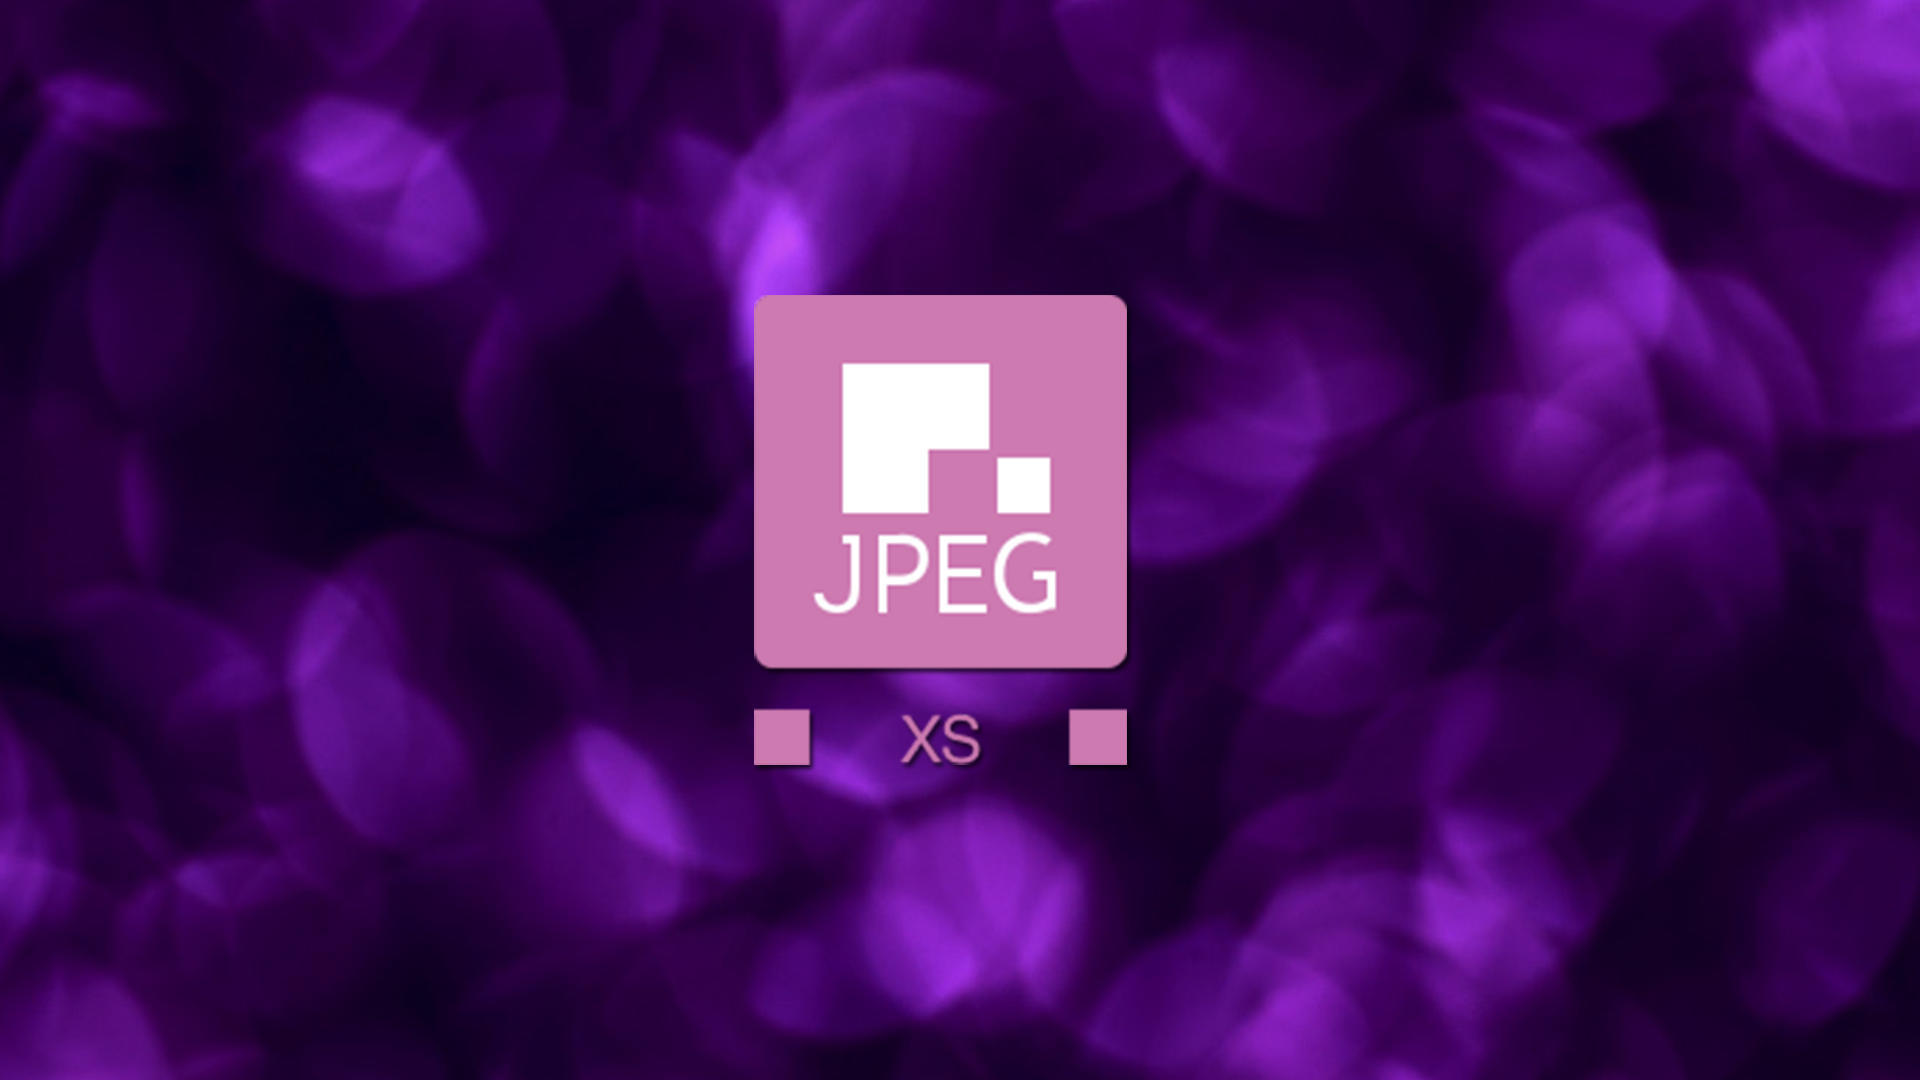  เปิดตัวมาตรฐาน JPEG XS เพื่อ Live streaming และ VR พร้อมจุดเด่นค่าความหน่วงตํ่า ประหยัดพลังงาน